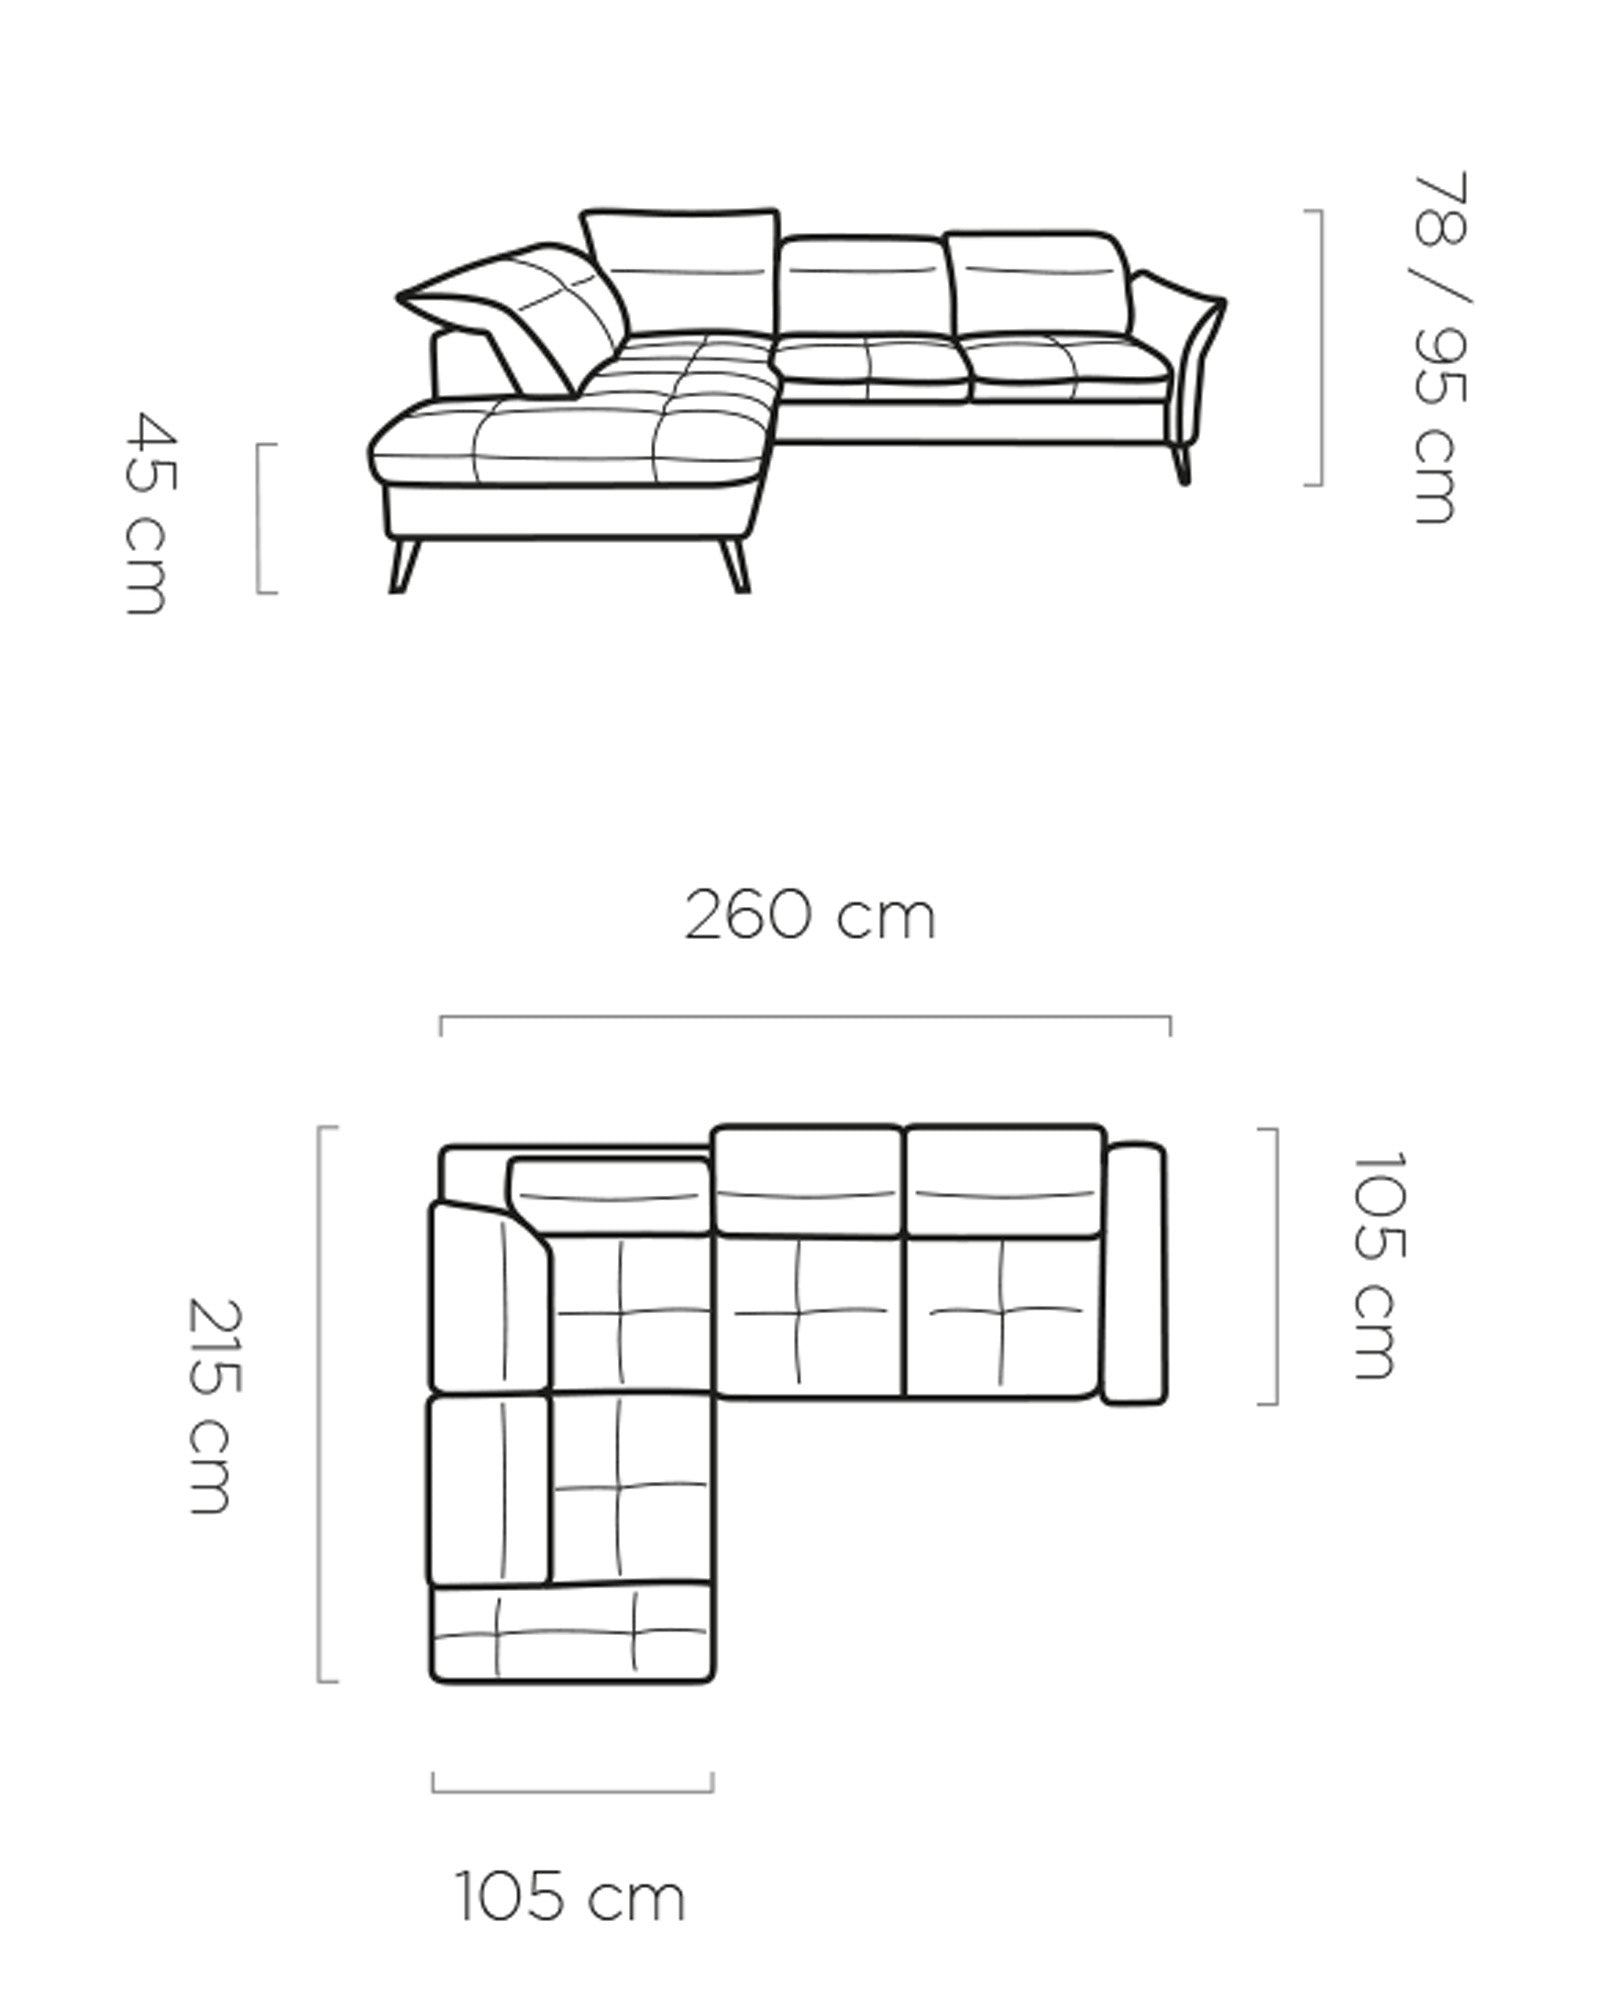 Dīvāns LP 260/105/11 cm - N1 Home